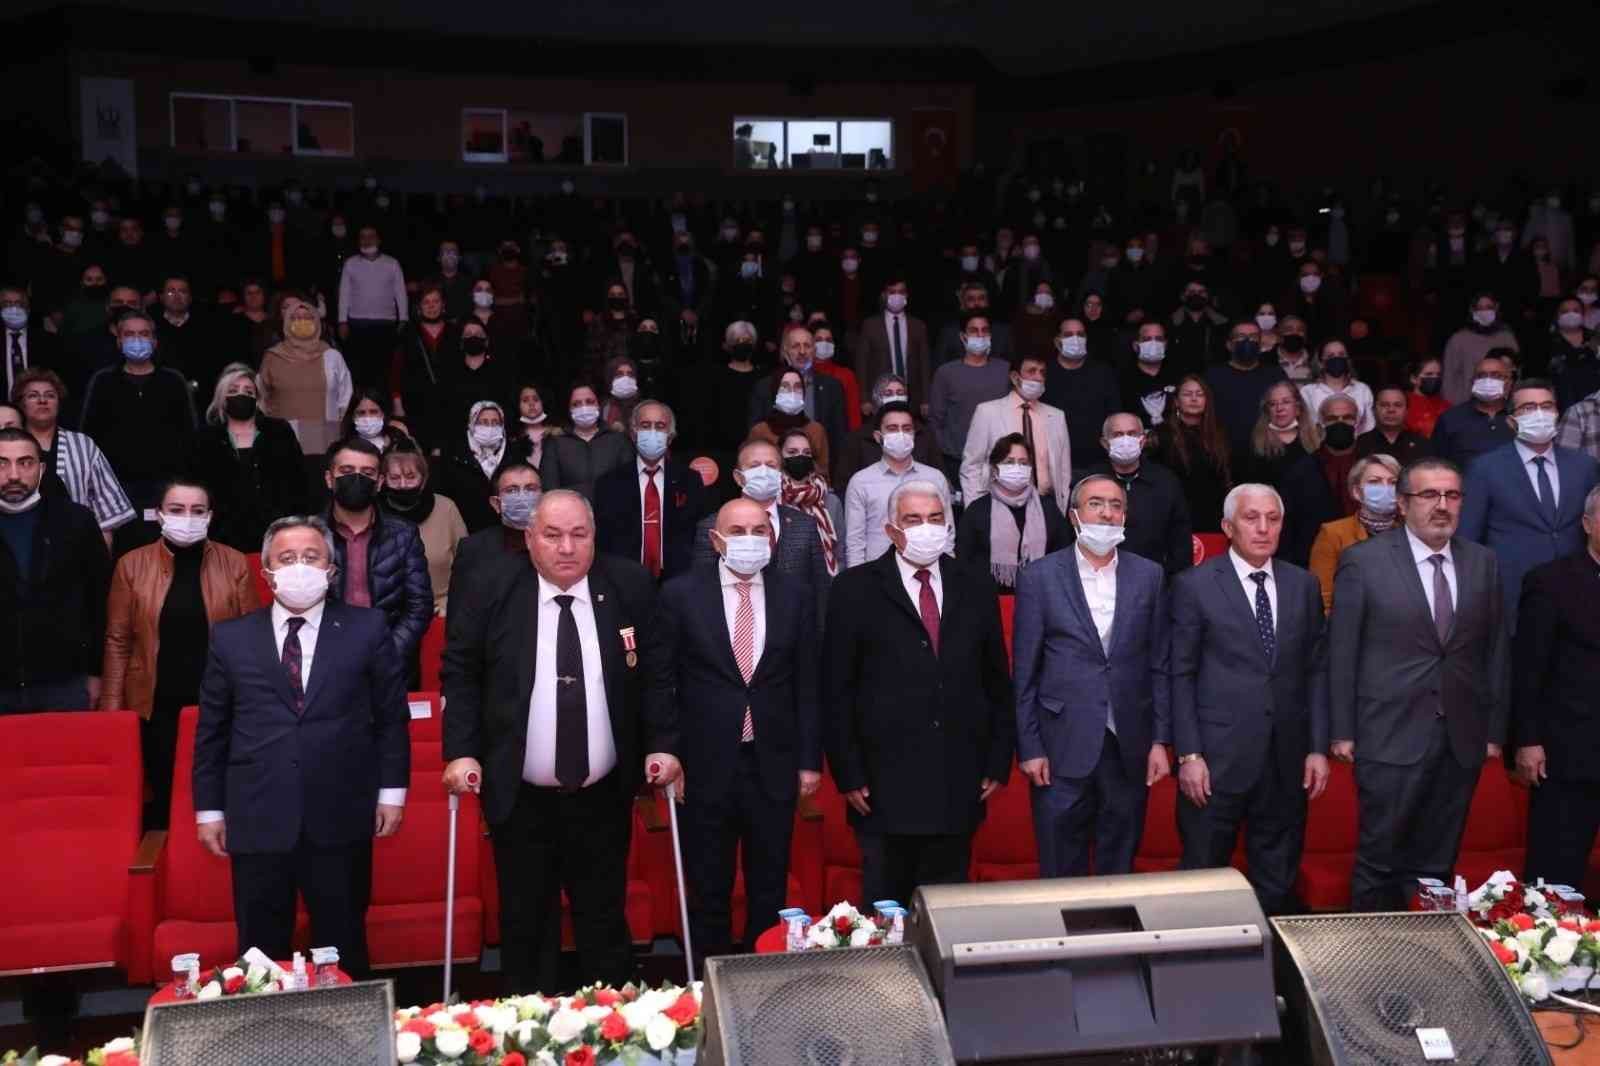 Atatürk’ün Ankara’ya gelişi coşkulu konserle kutlandı #ankara